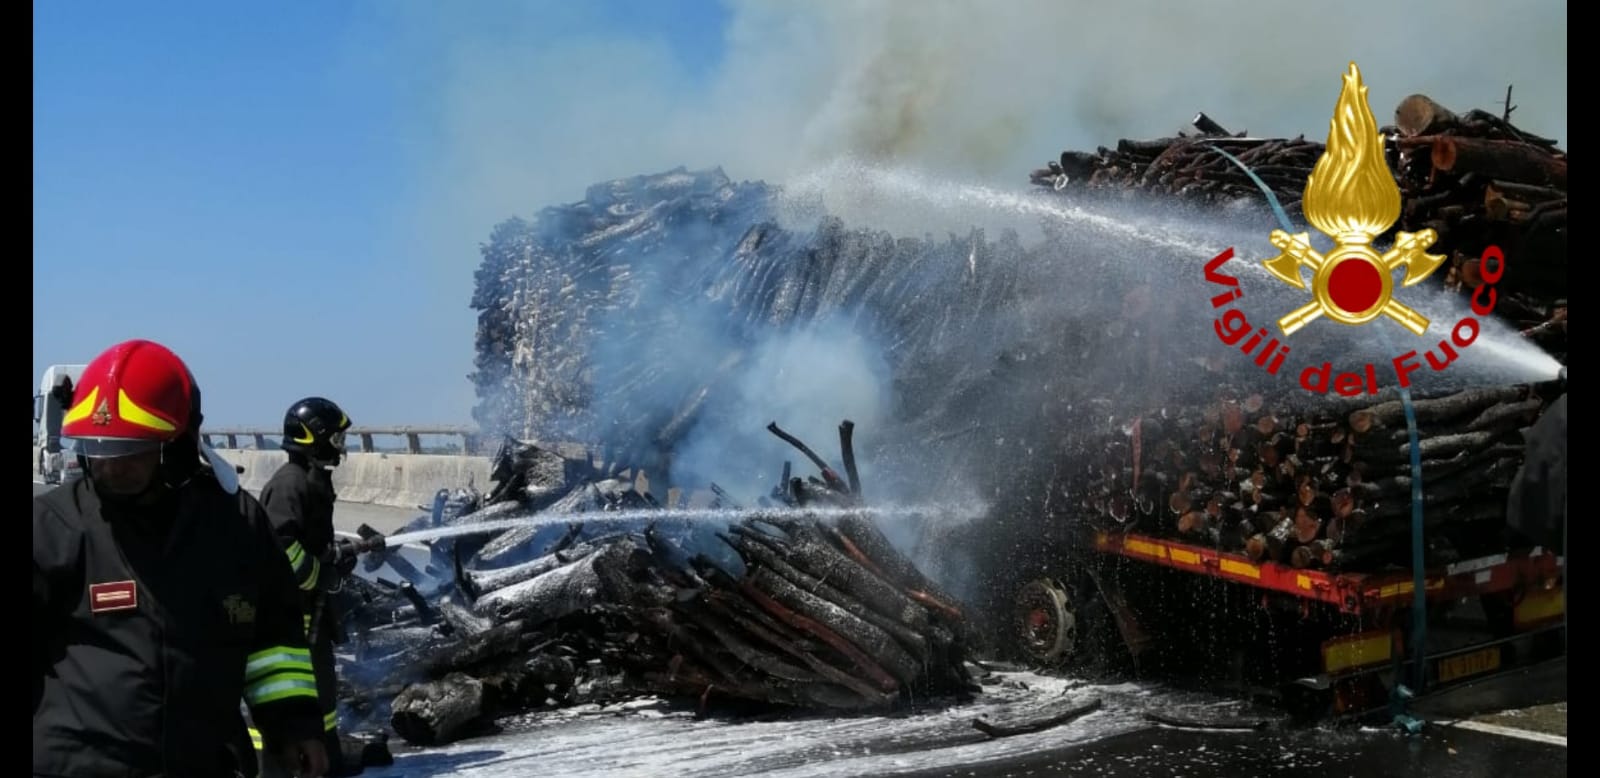 A fuoco mezzo pesante che trasportava legna, viabilità interrotta sulla FiPiLi